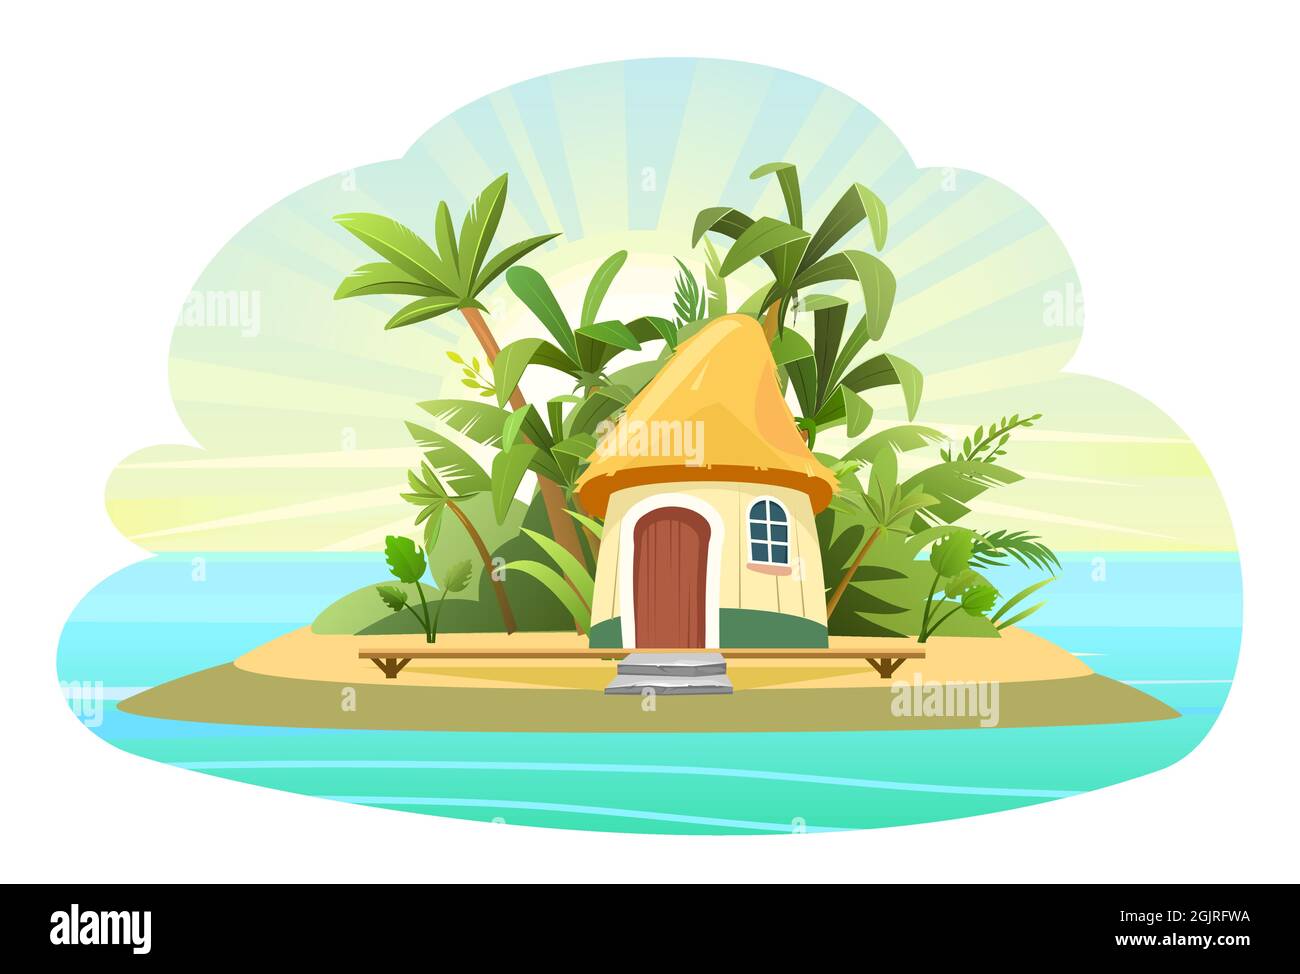 Gemütliche Küstenortstadt. Eine wunderschöne Stadt am Meer. Traditionelle Häuser mit roten Dächern. Seeseite mit Meereshorizont. Illustration in einem flachen Stil Stock Vektor